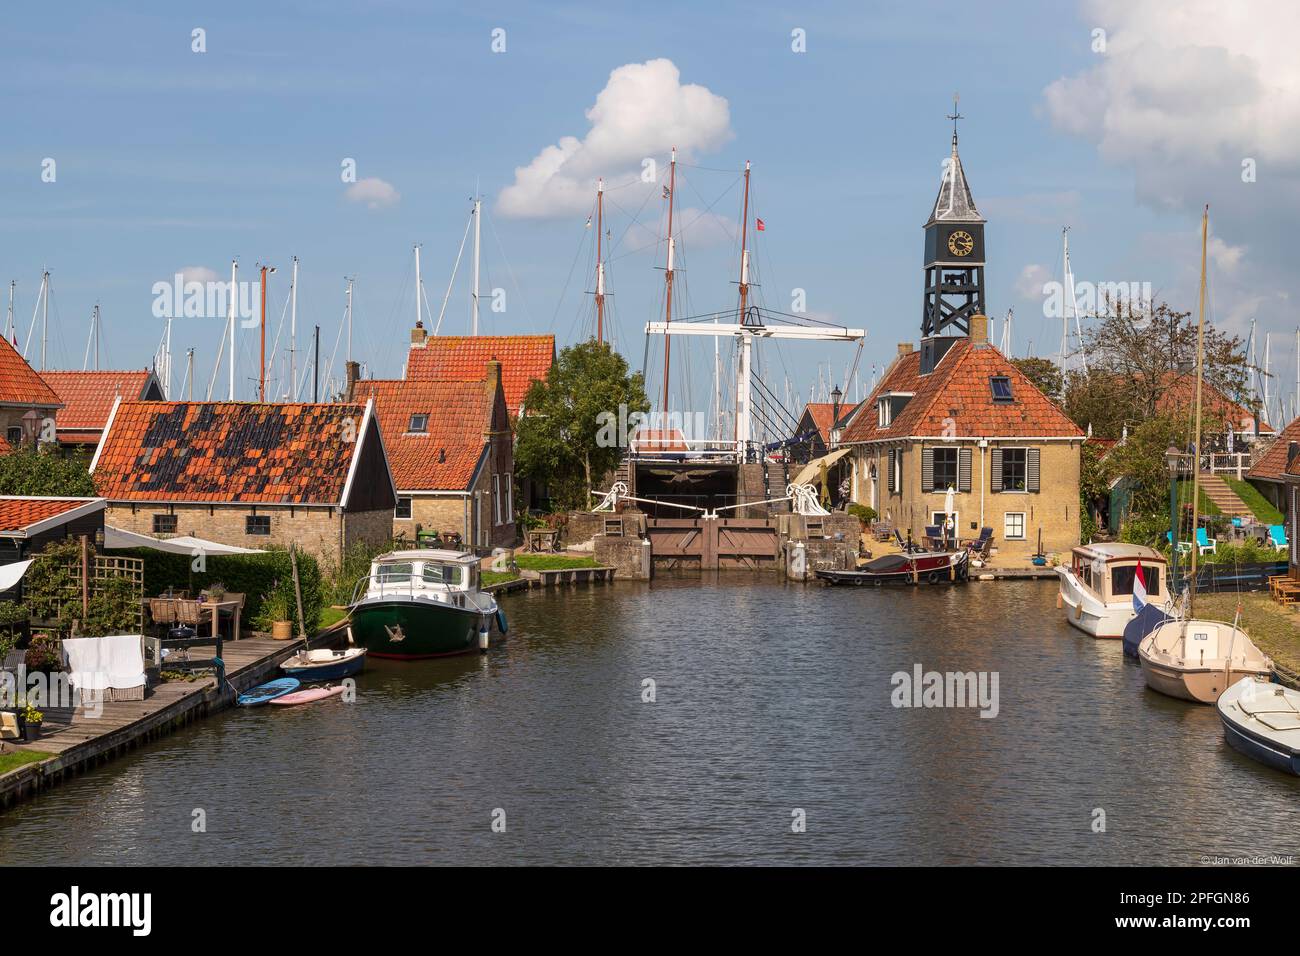 Blick auf die Schleuse, das Schlosshaus und die Holzbrücke in der malerischen Altstadt Hindeloopen in Friesland in den Niederlanden. Stockfoto